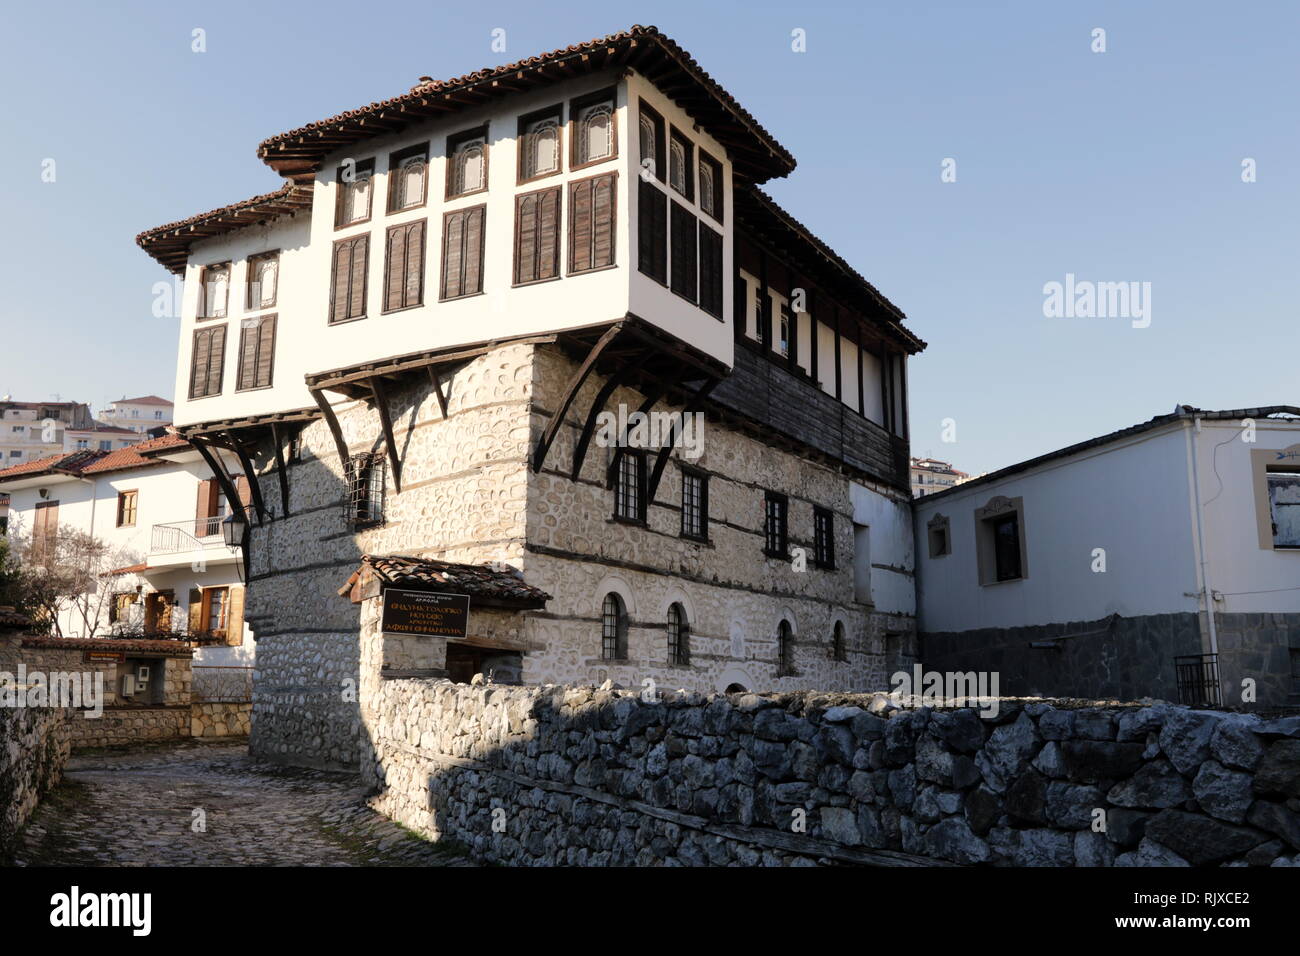 Hôtel particulier de l'époque ottomane, sachnisi avec un type traditionnel de baie vitrée, accueille actuellement le Musée du Costume de la ville de Kastoria, Grèce. Banque D'Images